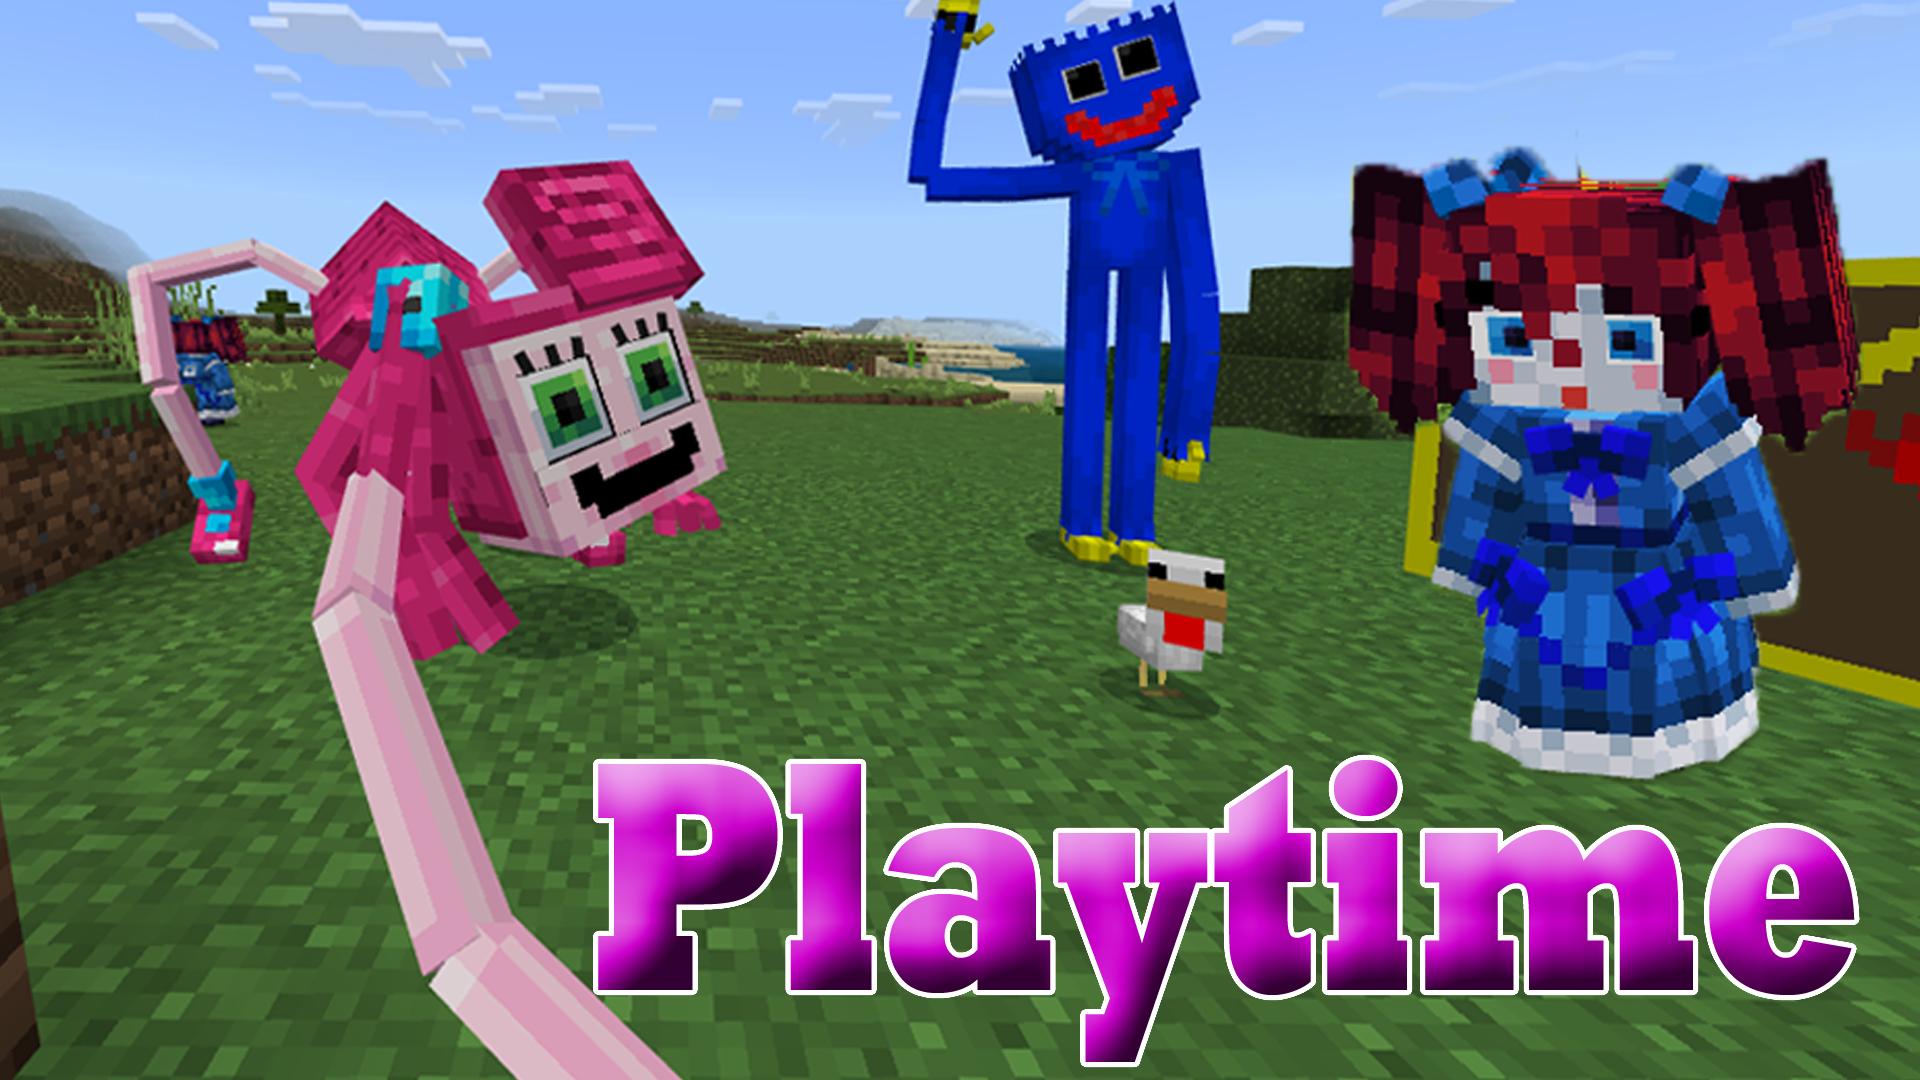 Карта poppy playtime 3 в minecraft. Poppy Minecraft. Майнкрафт скин Poppy Playtime 3. Человечек из Poppy Playtime в Minecraft. Poppy Playtime Mod Minecraft pe by Bbendy.